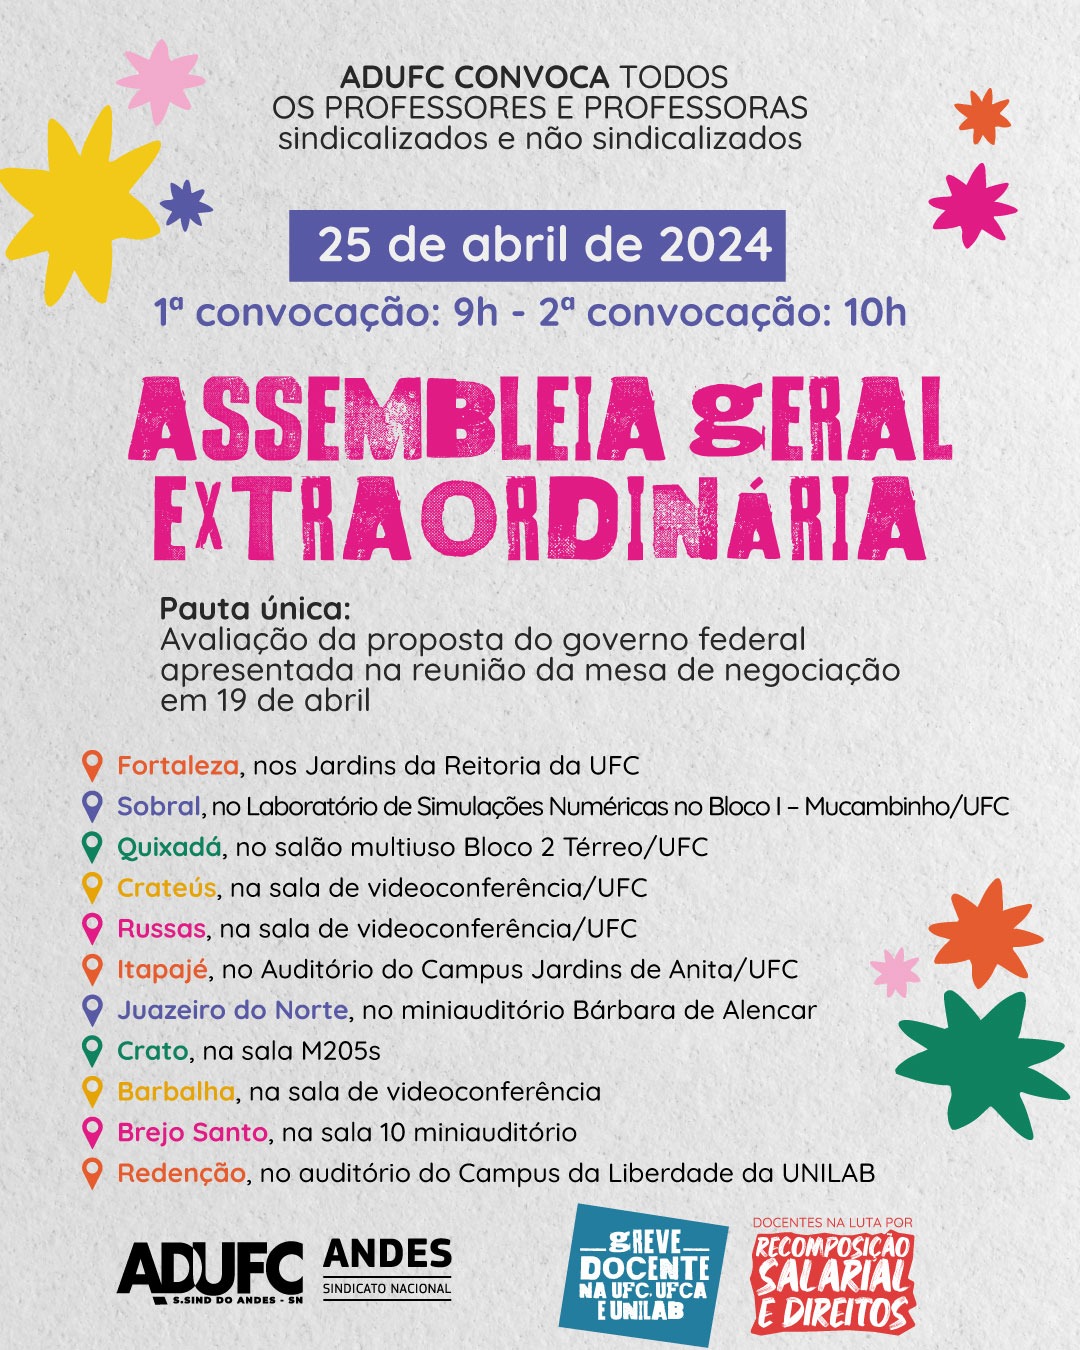 GREVE DA EDUCAÇÃO – ADUFC convida docentes para Assembleia Geral amanhã (25) sobre avaliação da proposta de reajuste do governo